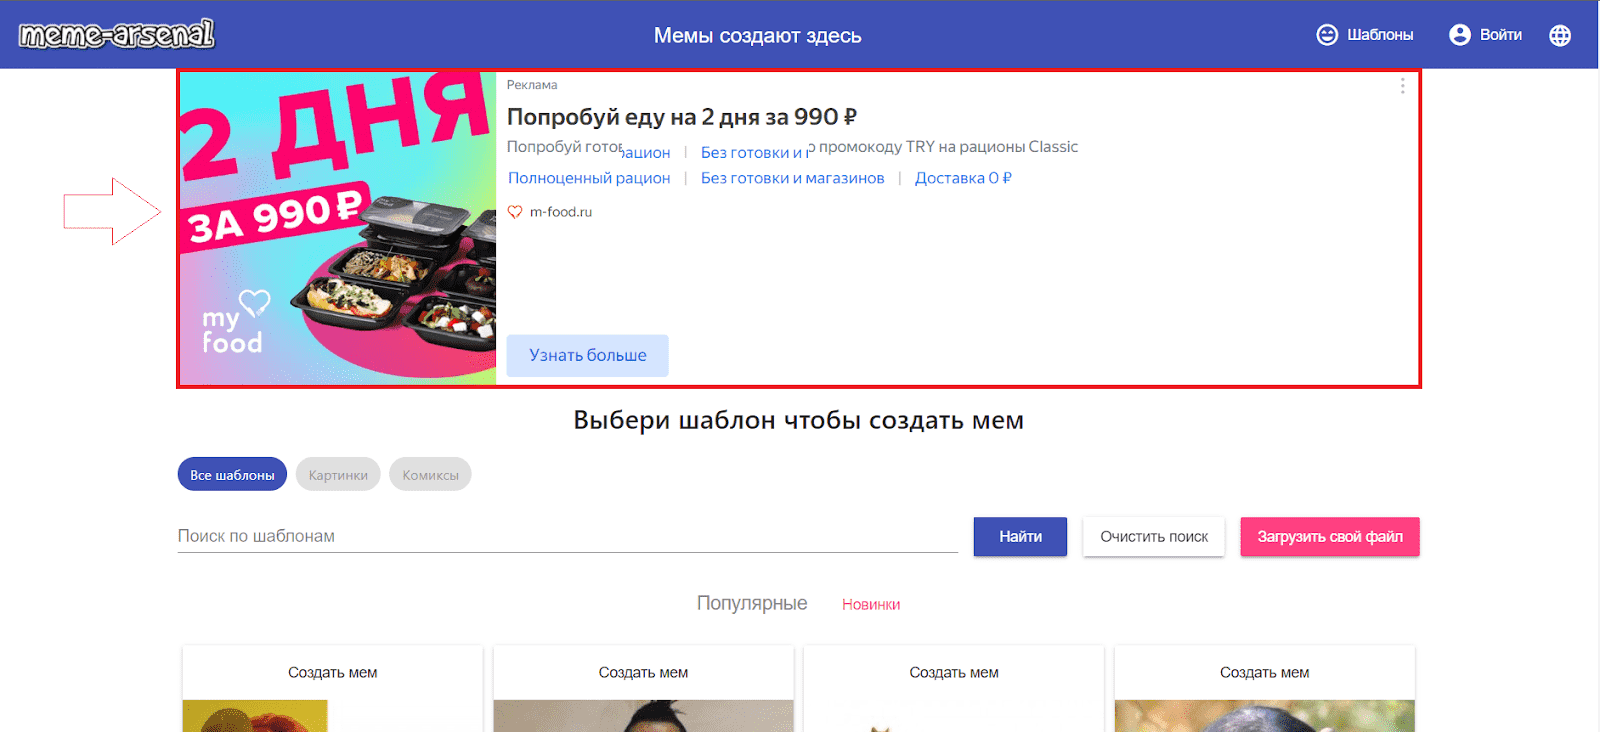 Пример программатик-рекламы - баннер на одном из сайтов-партнеров Яндекса